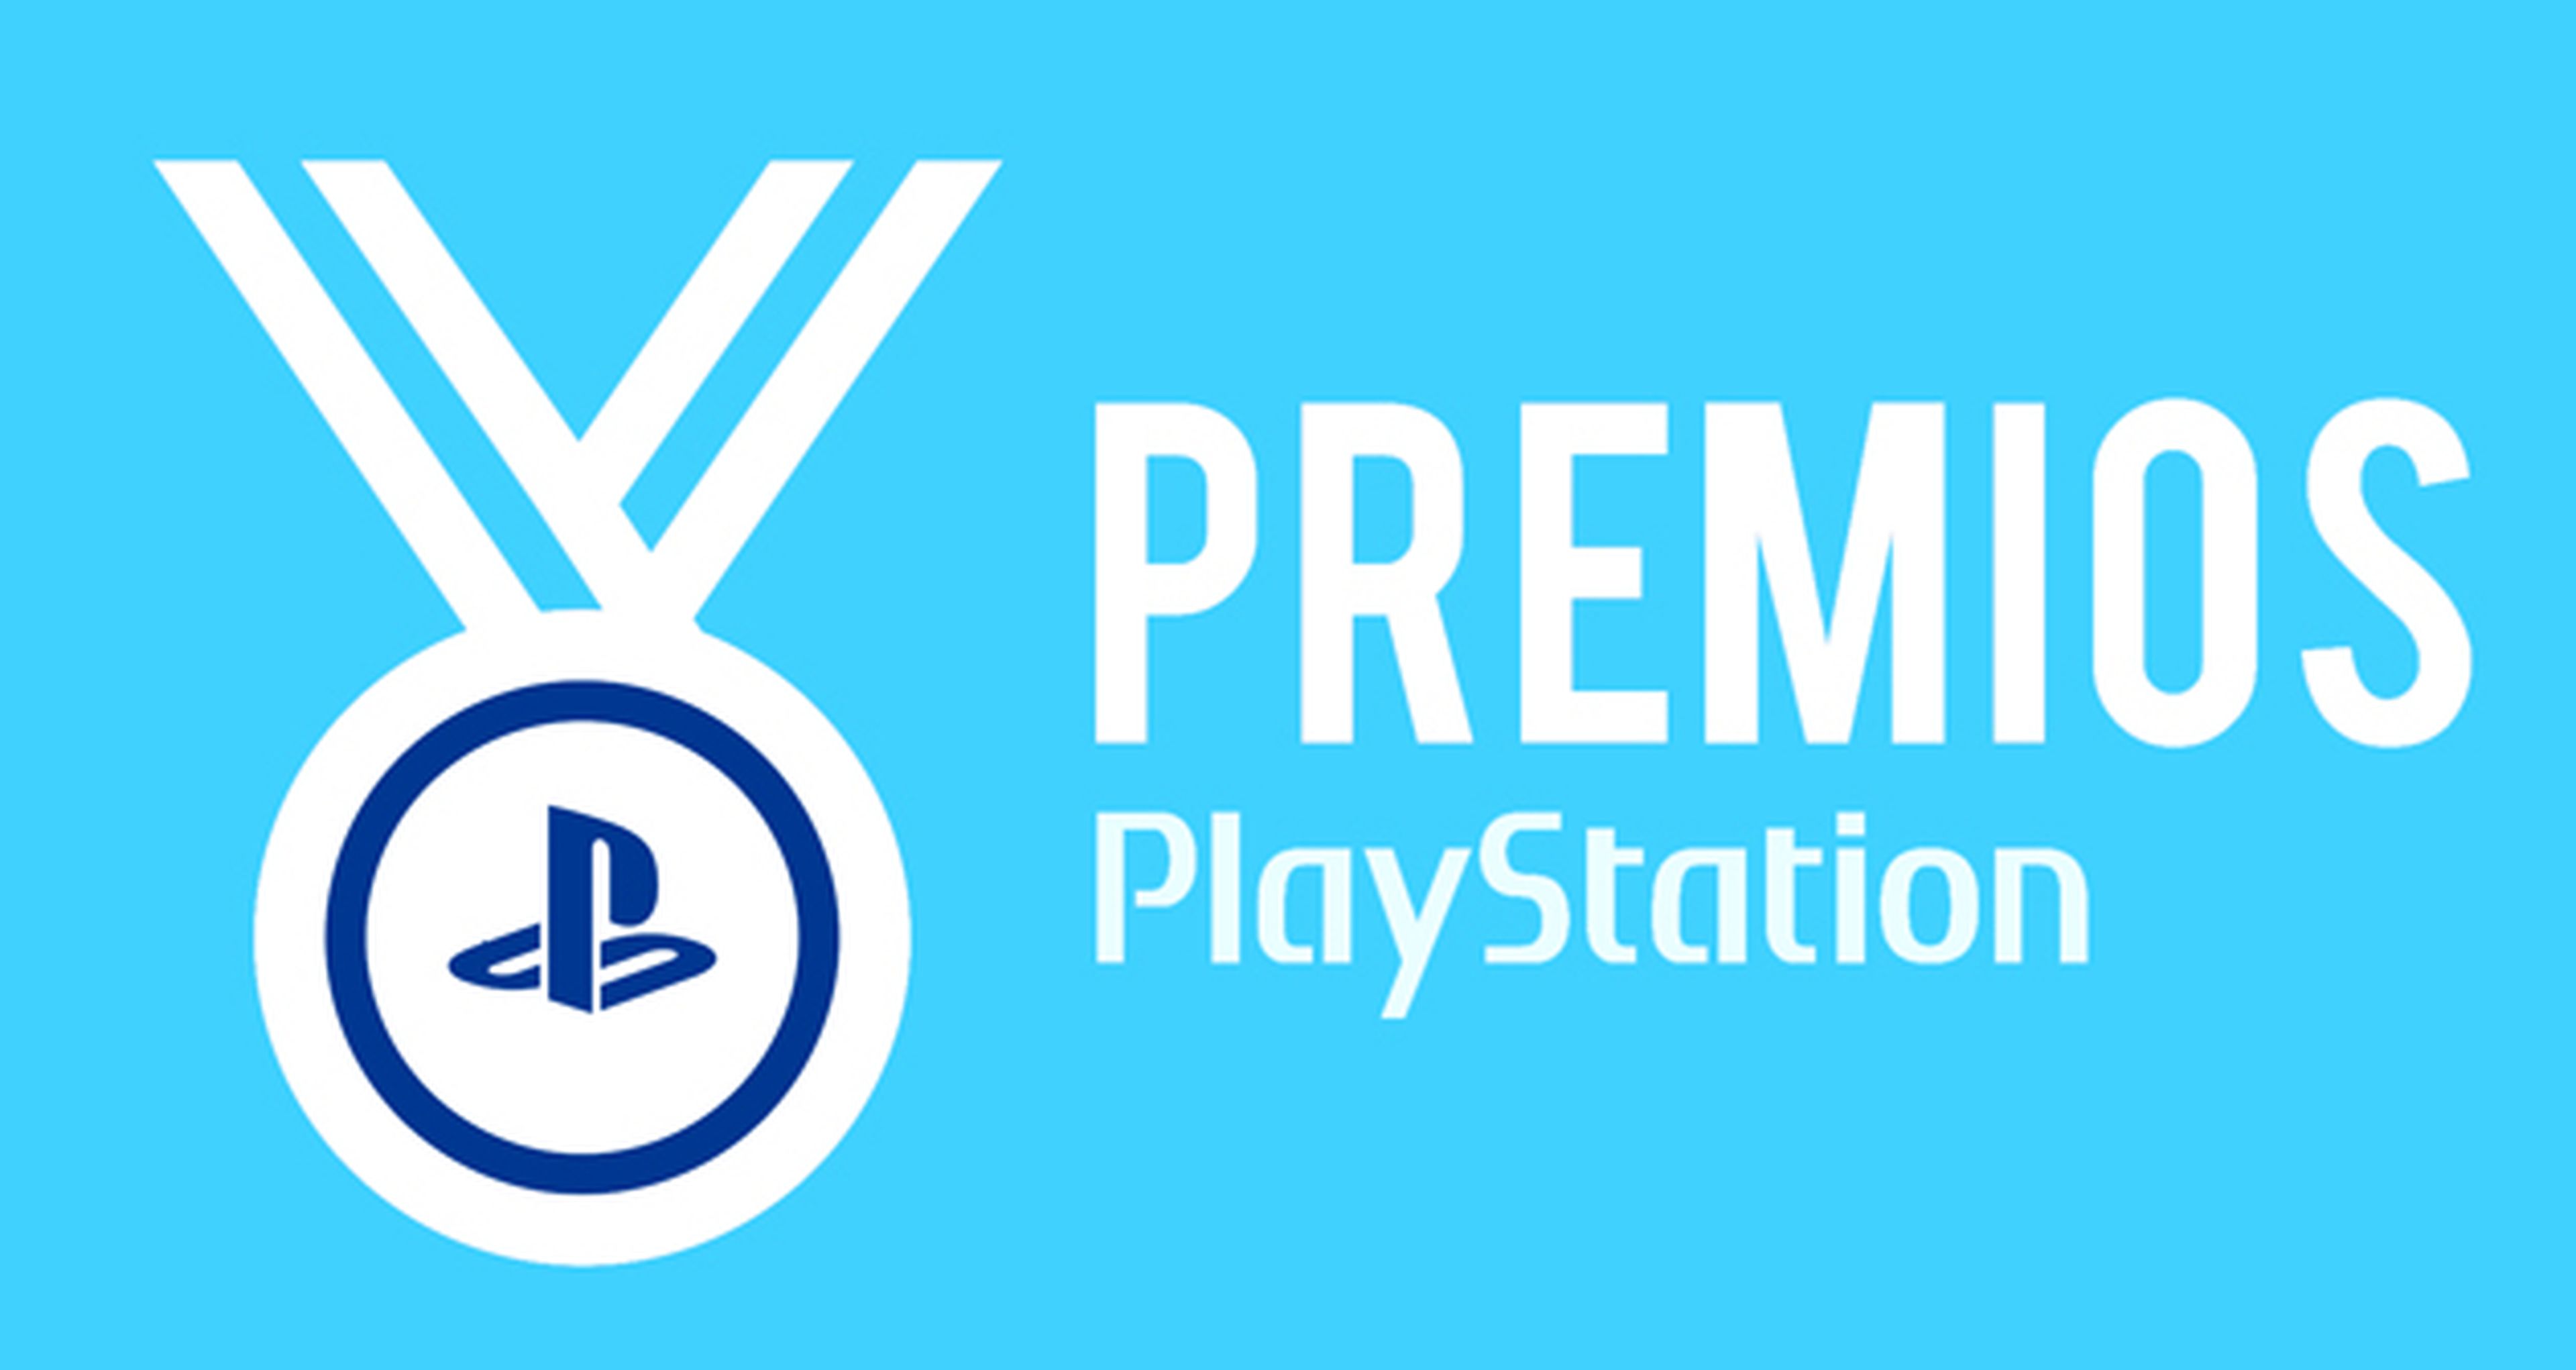 Ya está aquí la II Edición de los Premios PlayStation